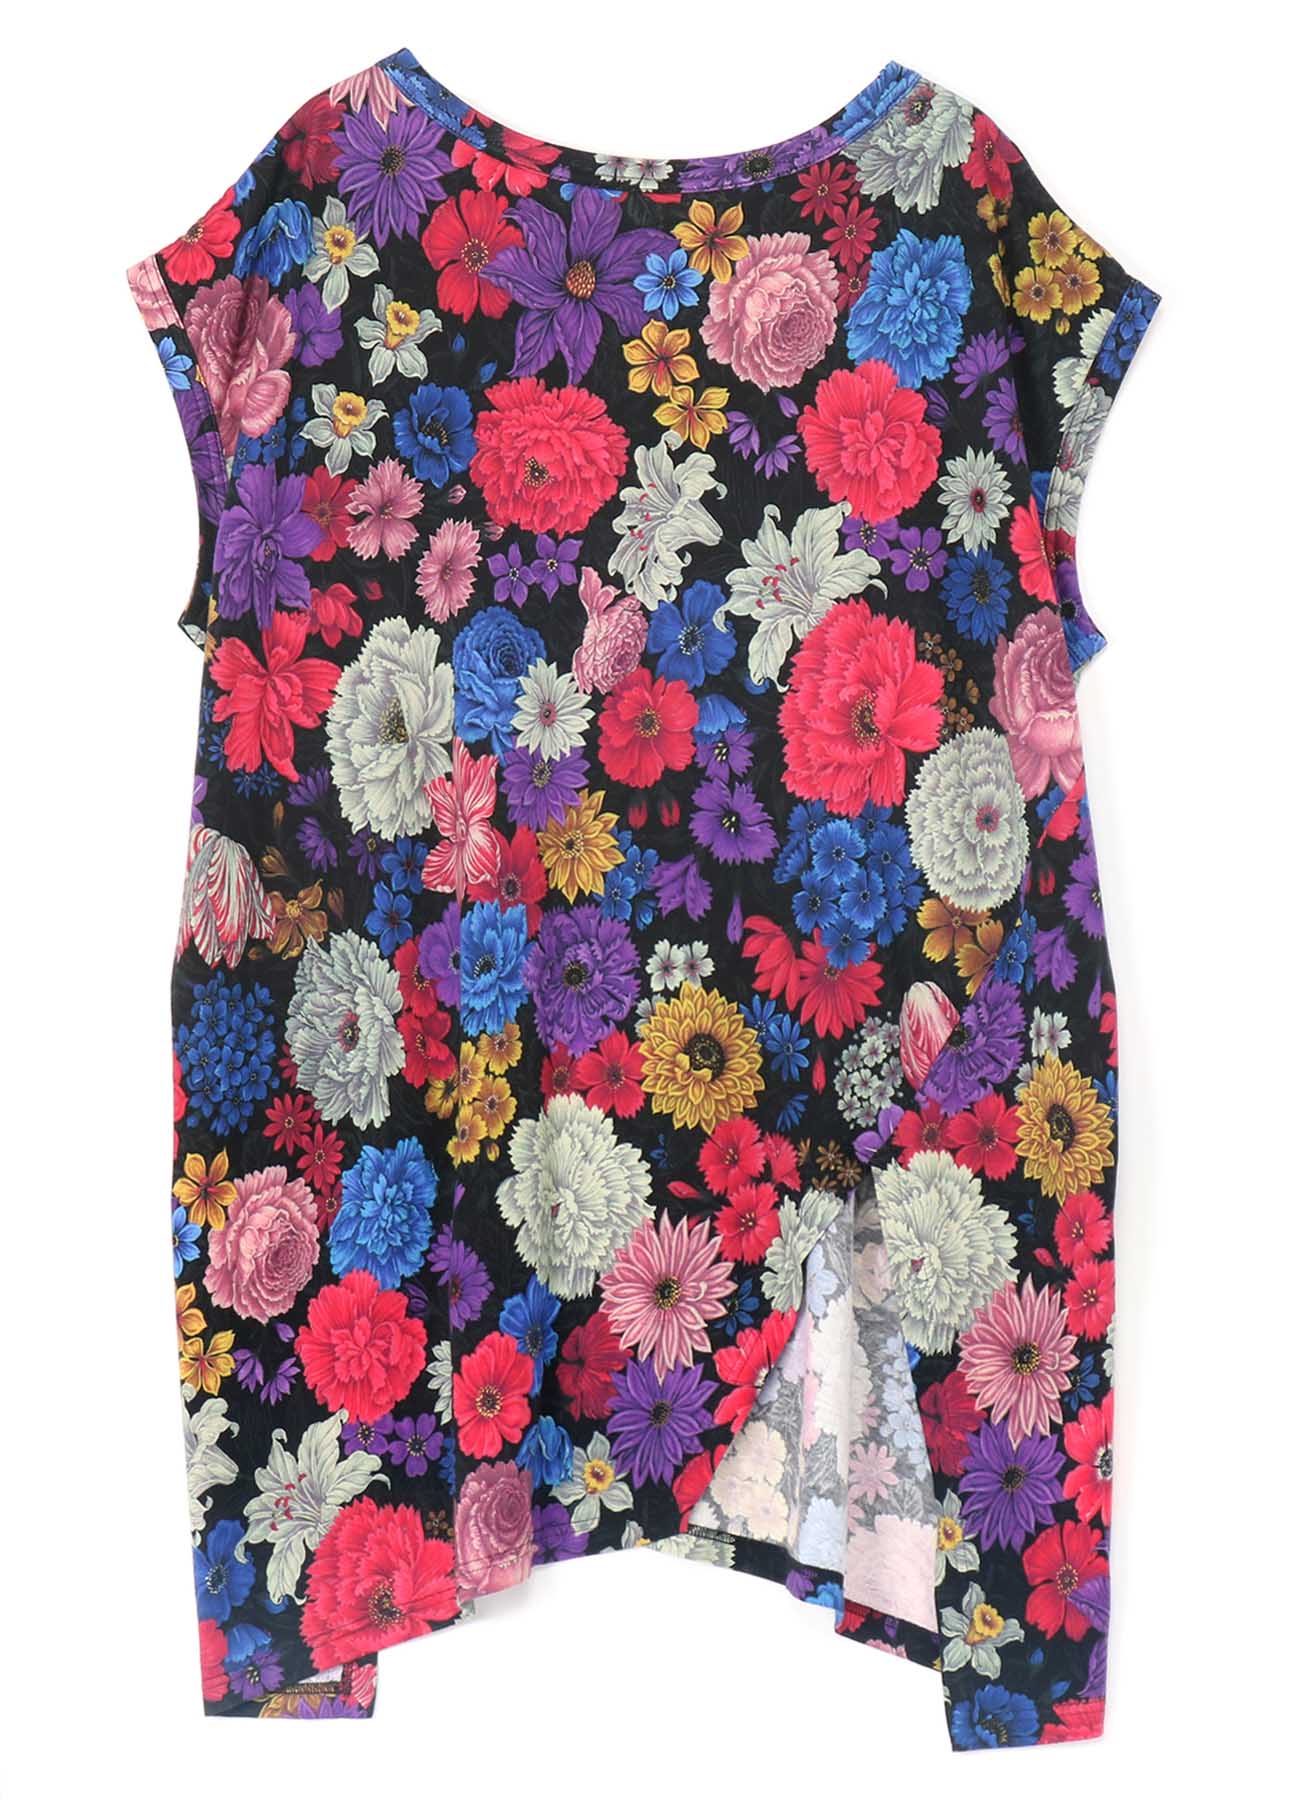 Flowers in Full Bloom Print Sleeveless Shirt with Slit in Hem